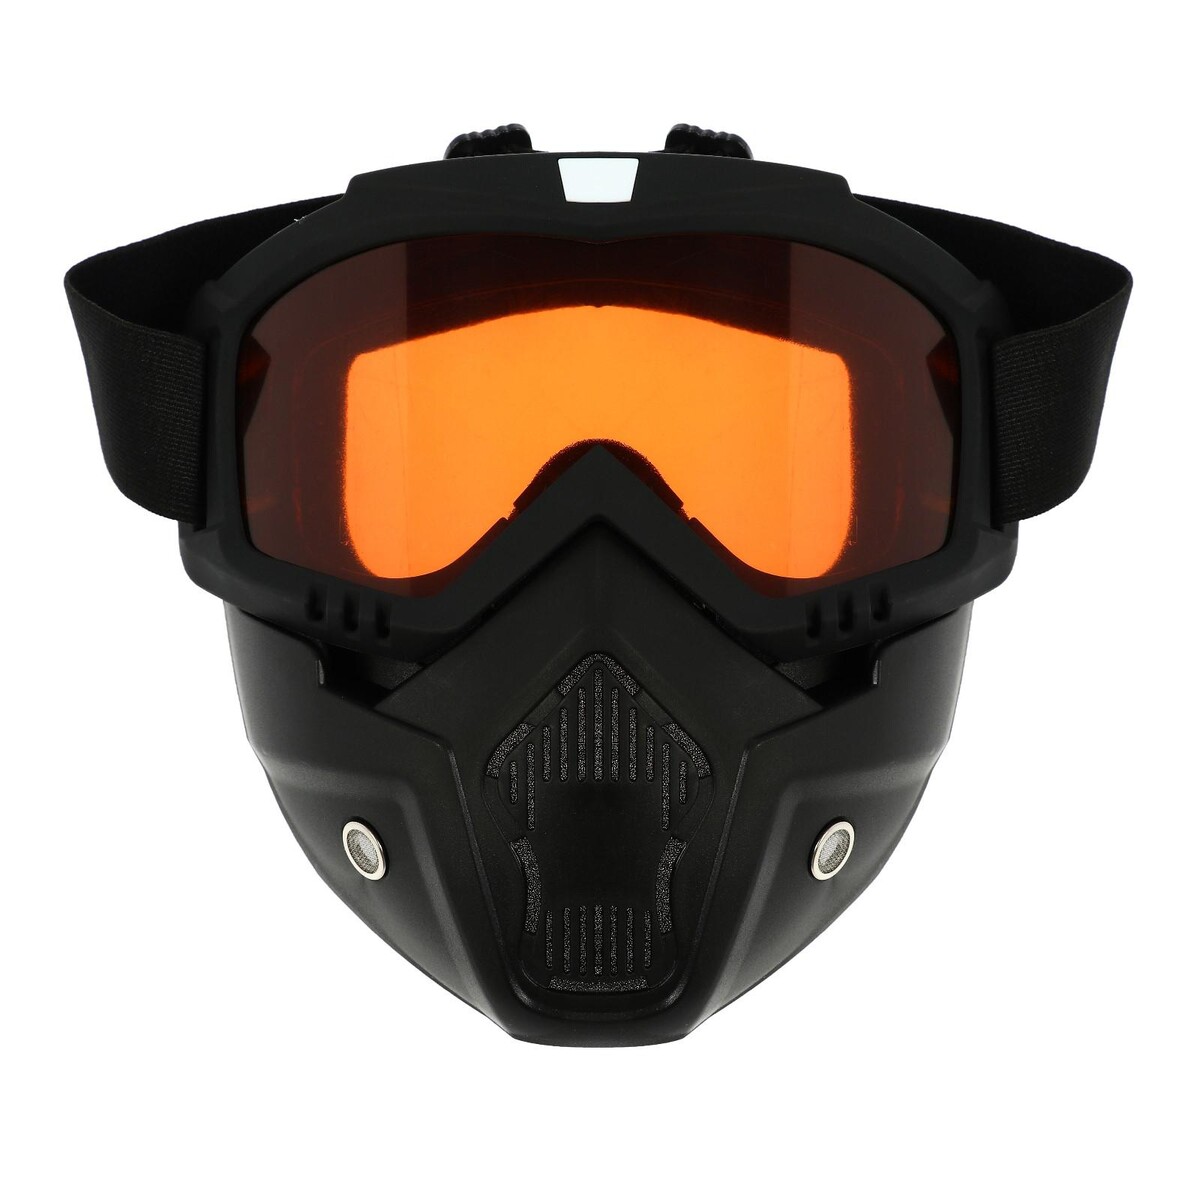 Очки-маска для езды на мототехнике, разборные, стекло оранжевый хром, цвет черный очки маска для езды на мототехнике разборные стекло с затемнением черные